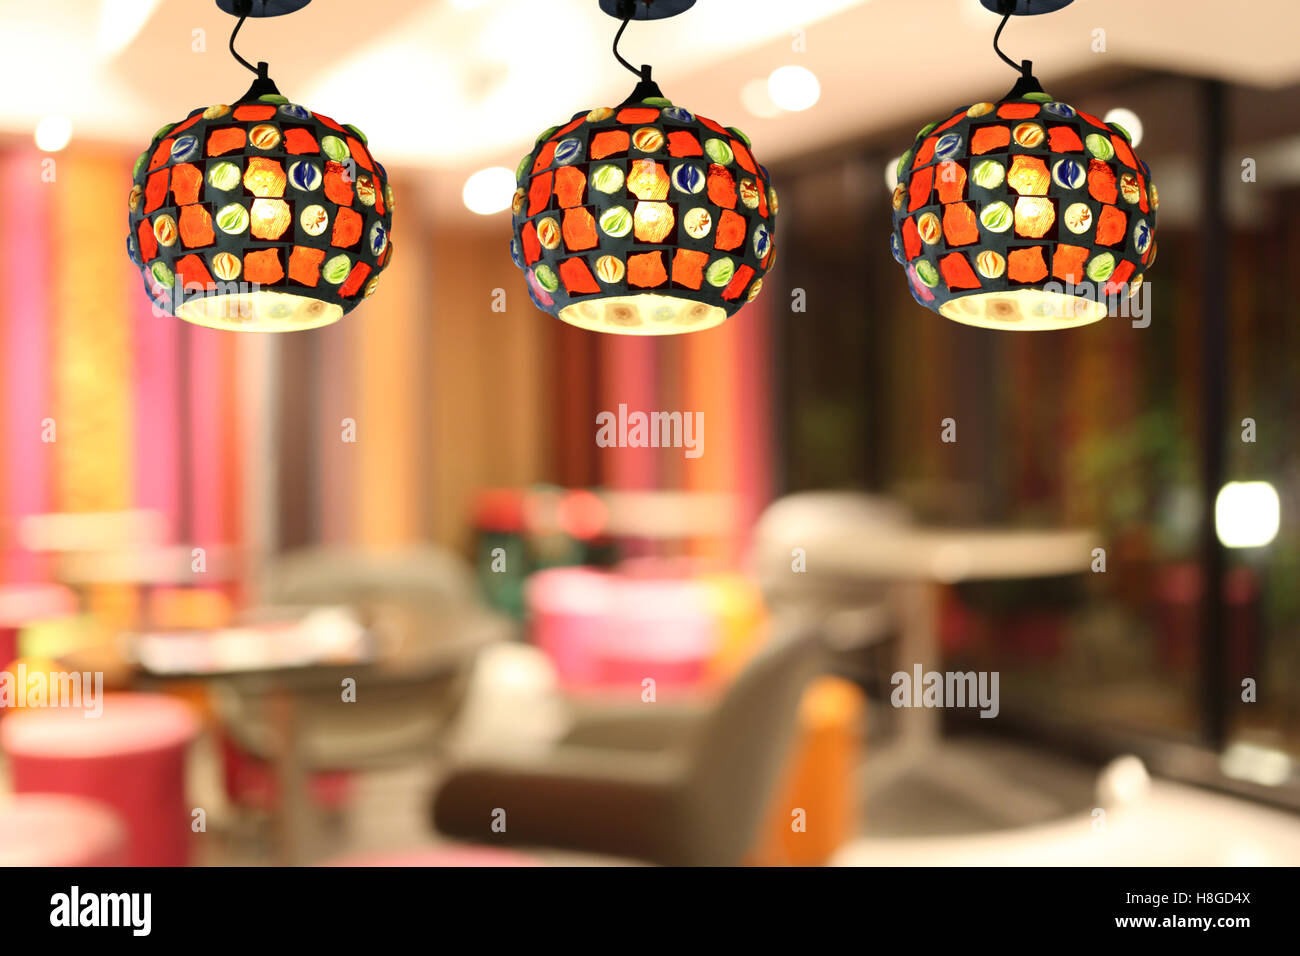 Un éclairage chaleureux des lampes de plafond moderne dans le café restaurant et la décoration intérieure. Banque D'Images